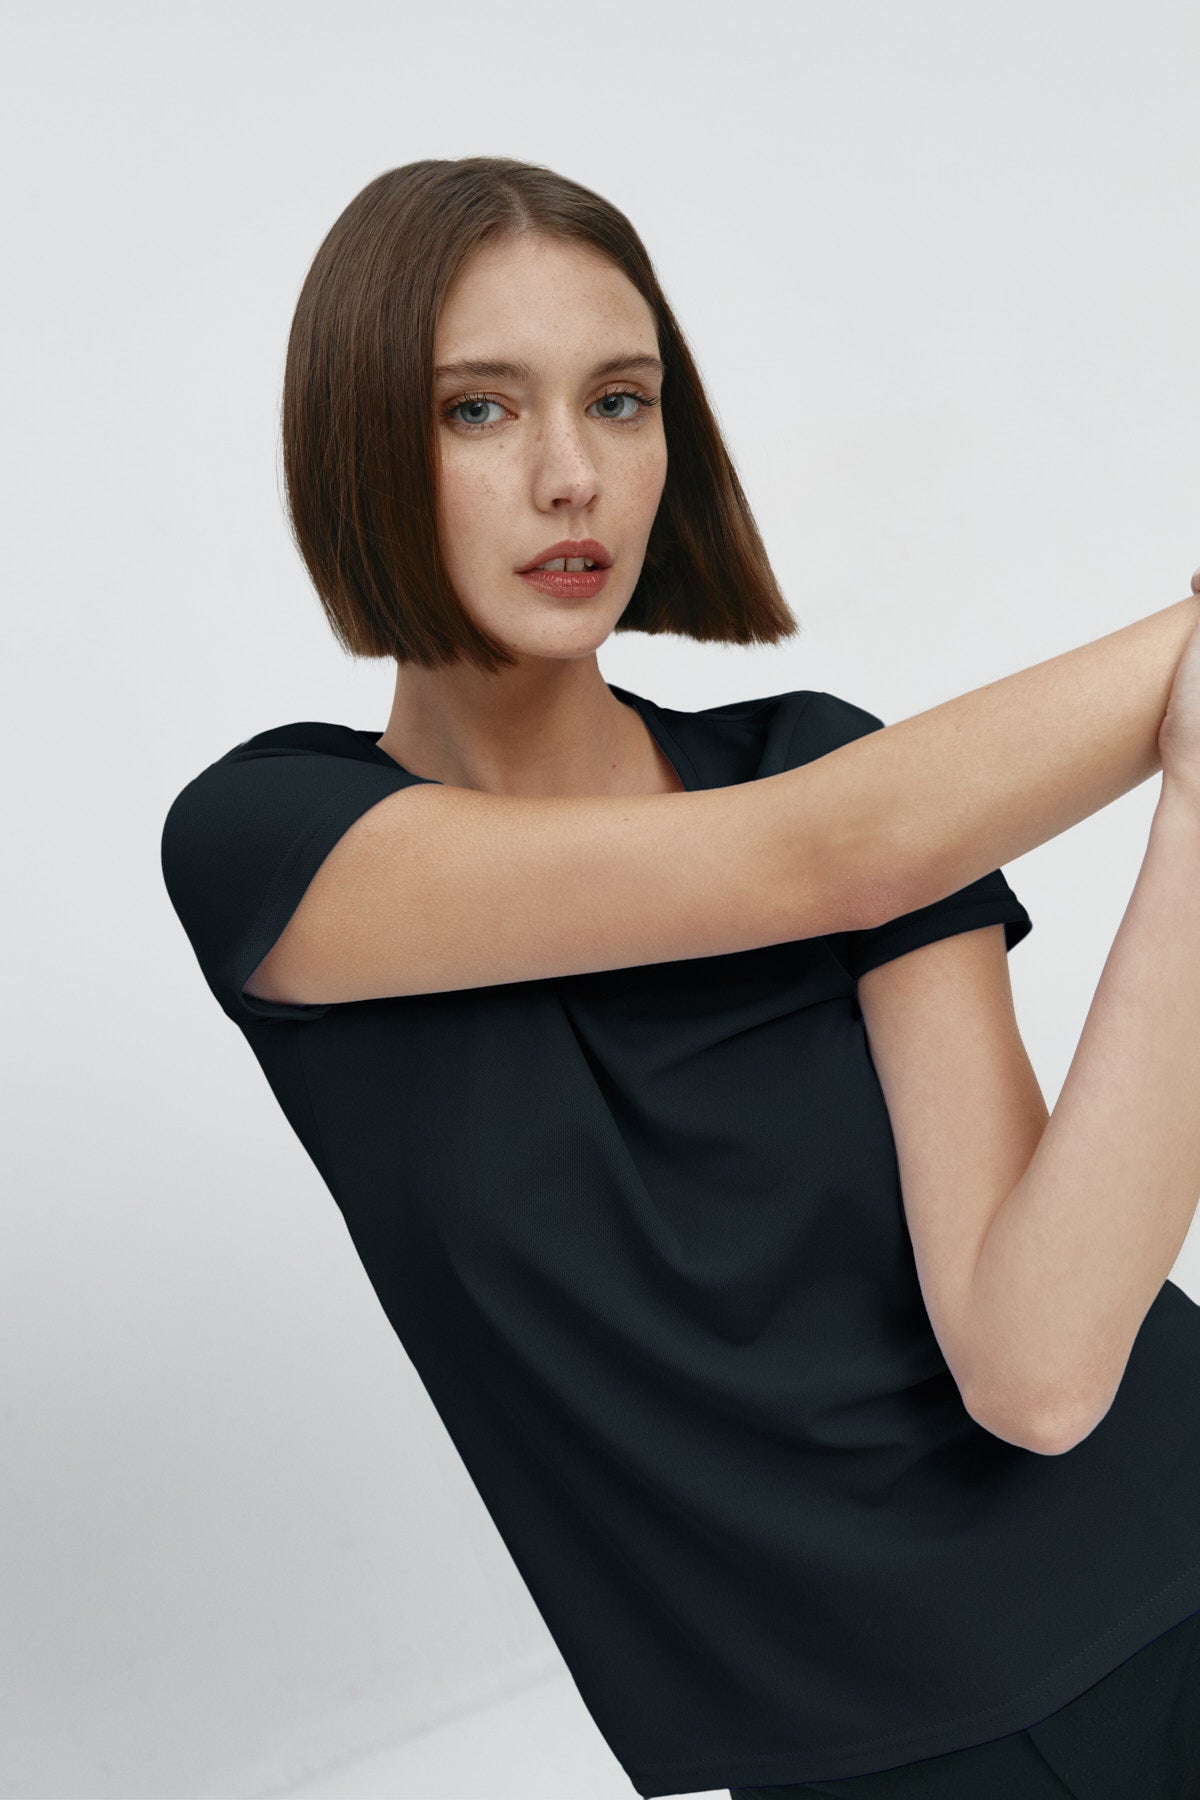 Camiseta para mujer de manga corta con escote pico color negro, básico. Foto flexibilidad